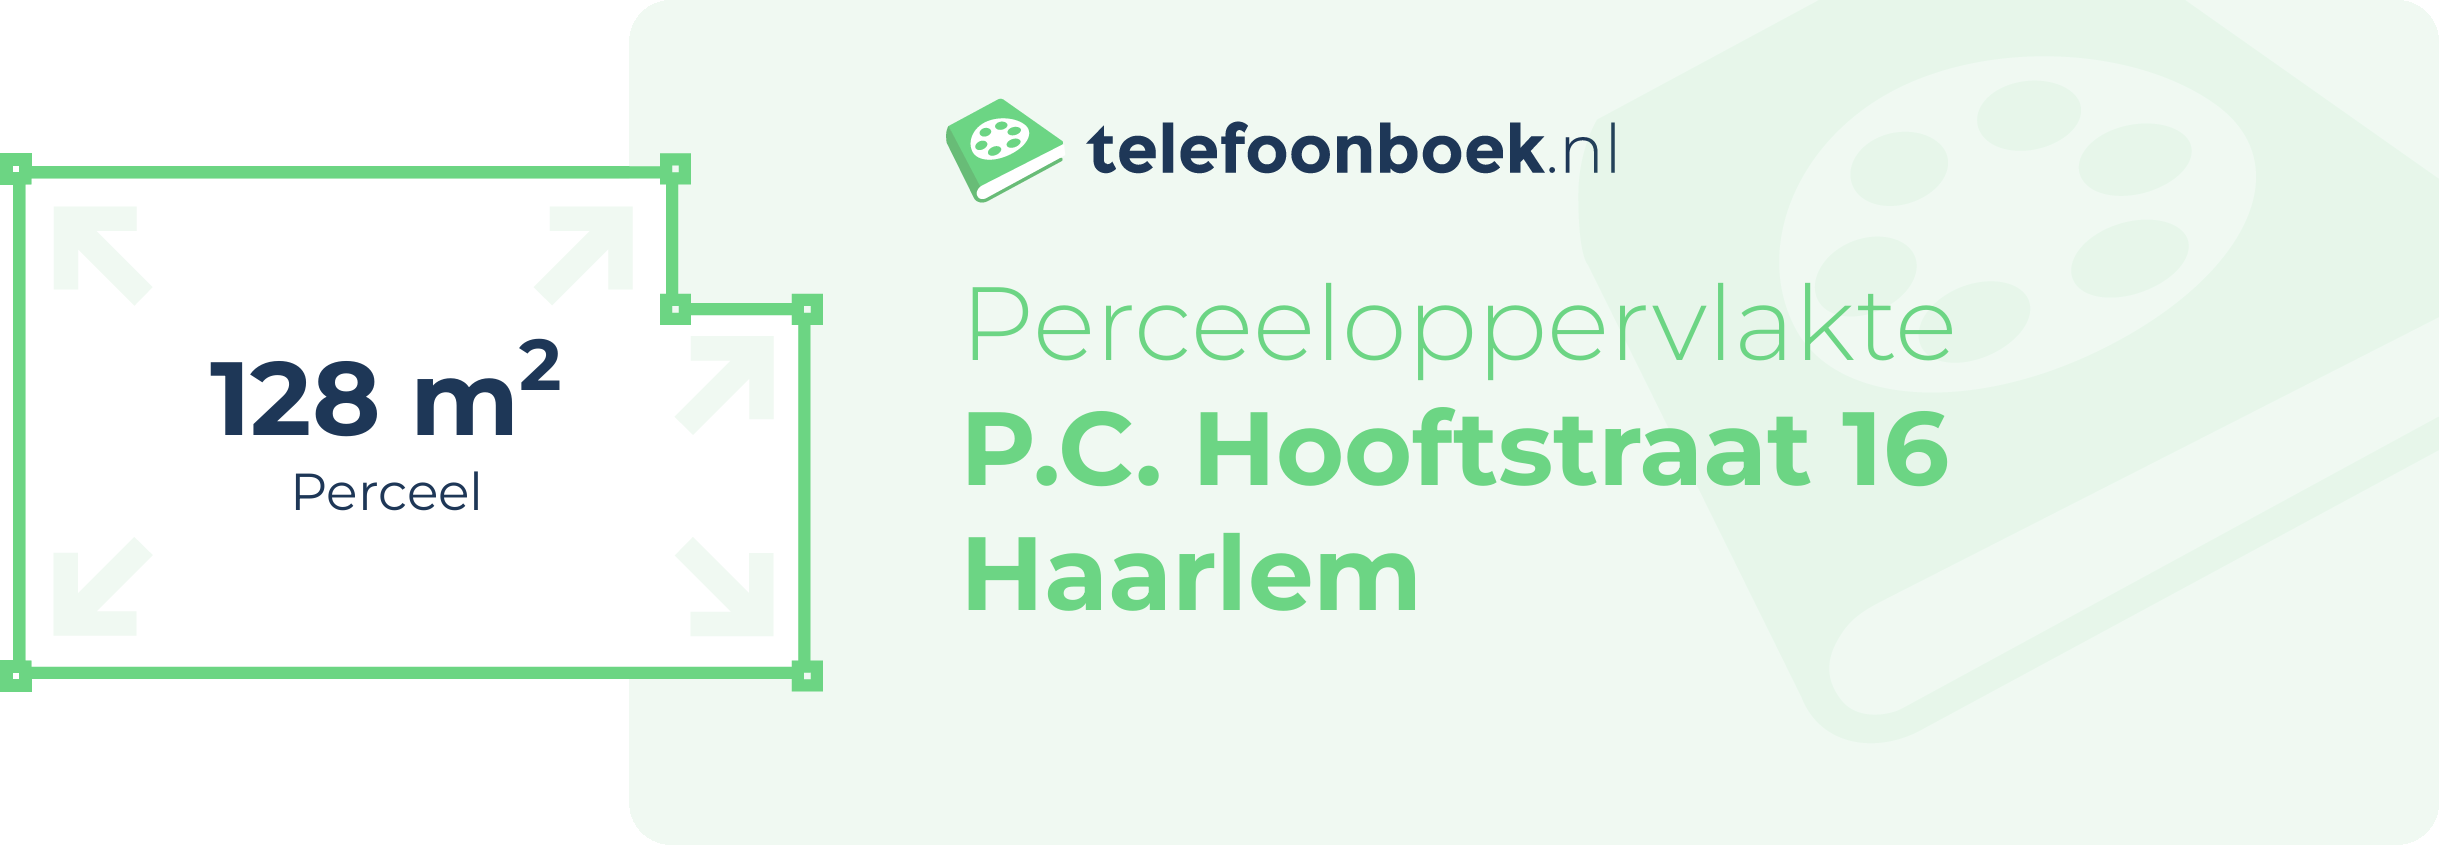 Perceeloppervlakte P.C. Hooftstraat 16 Haarlem